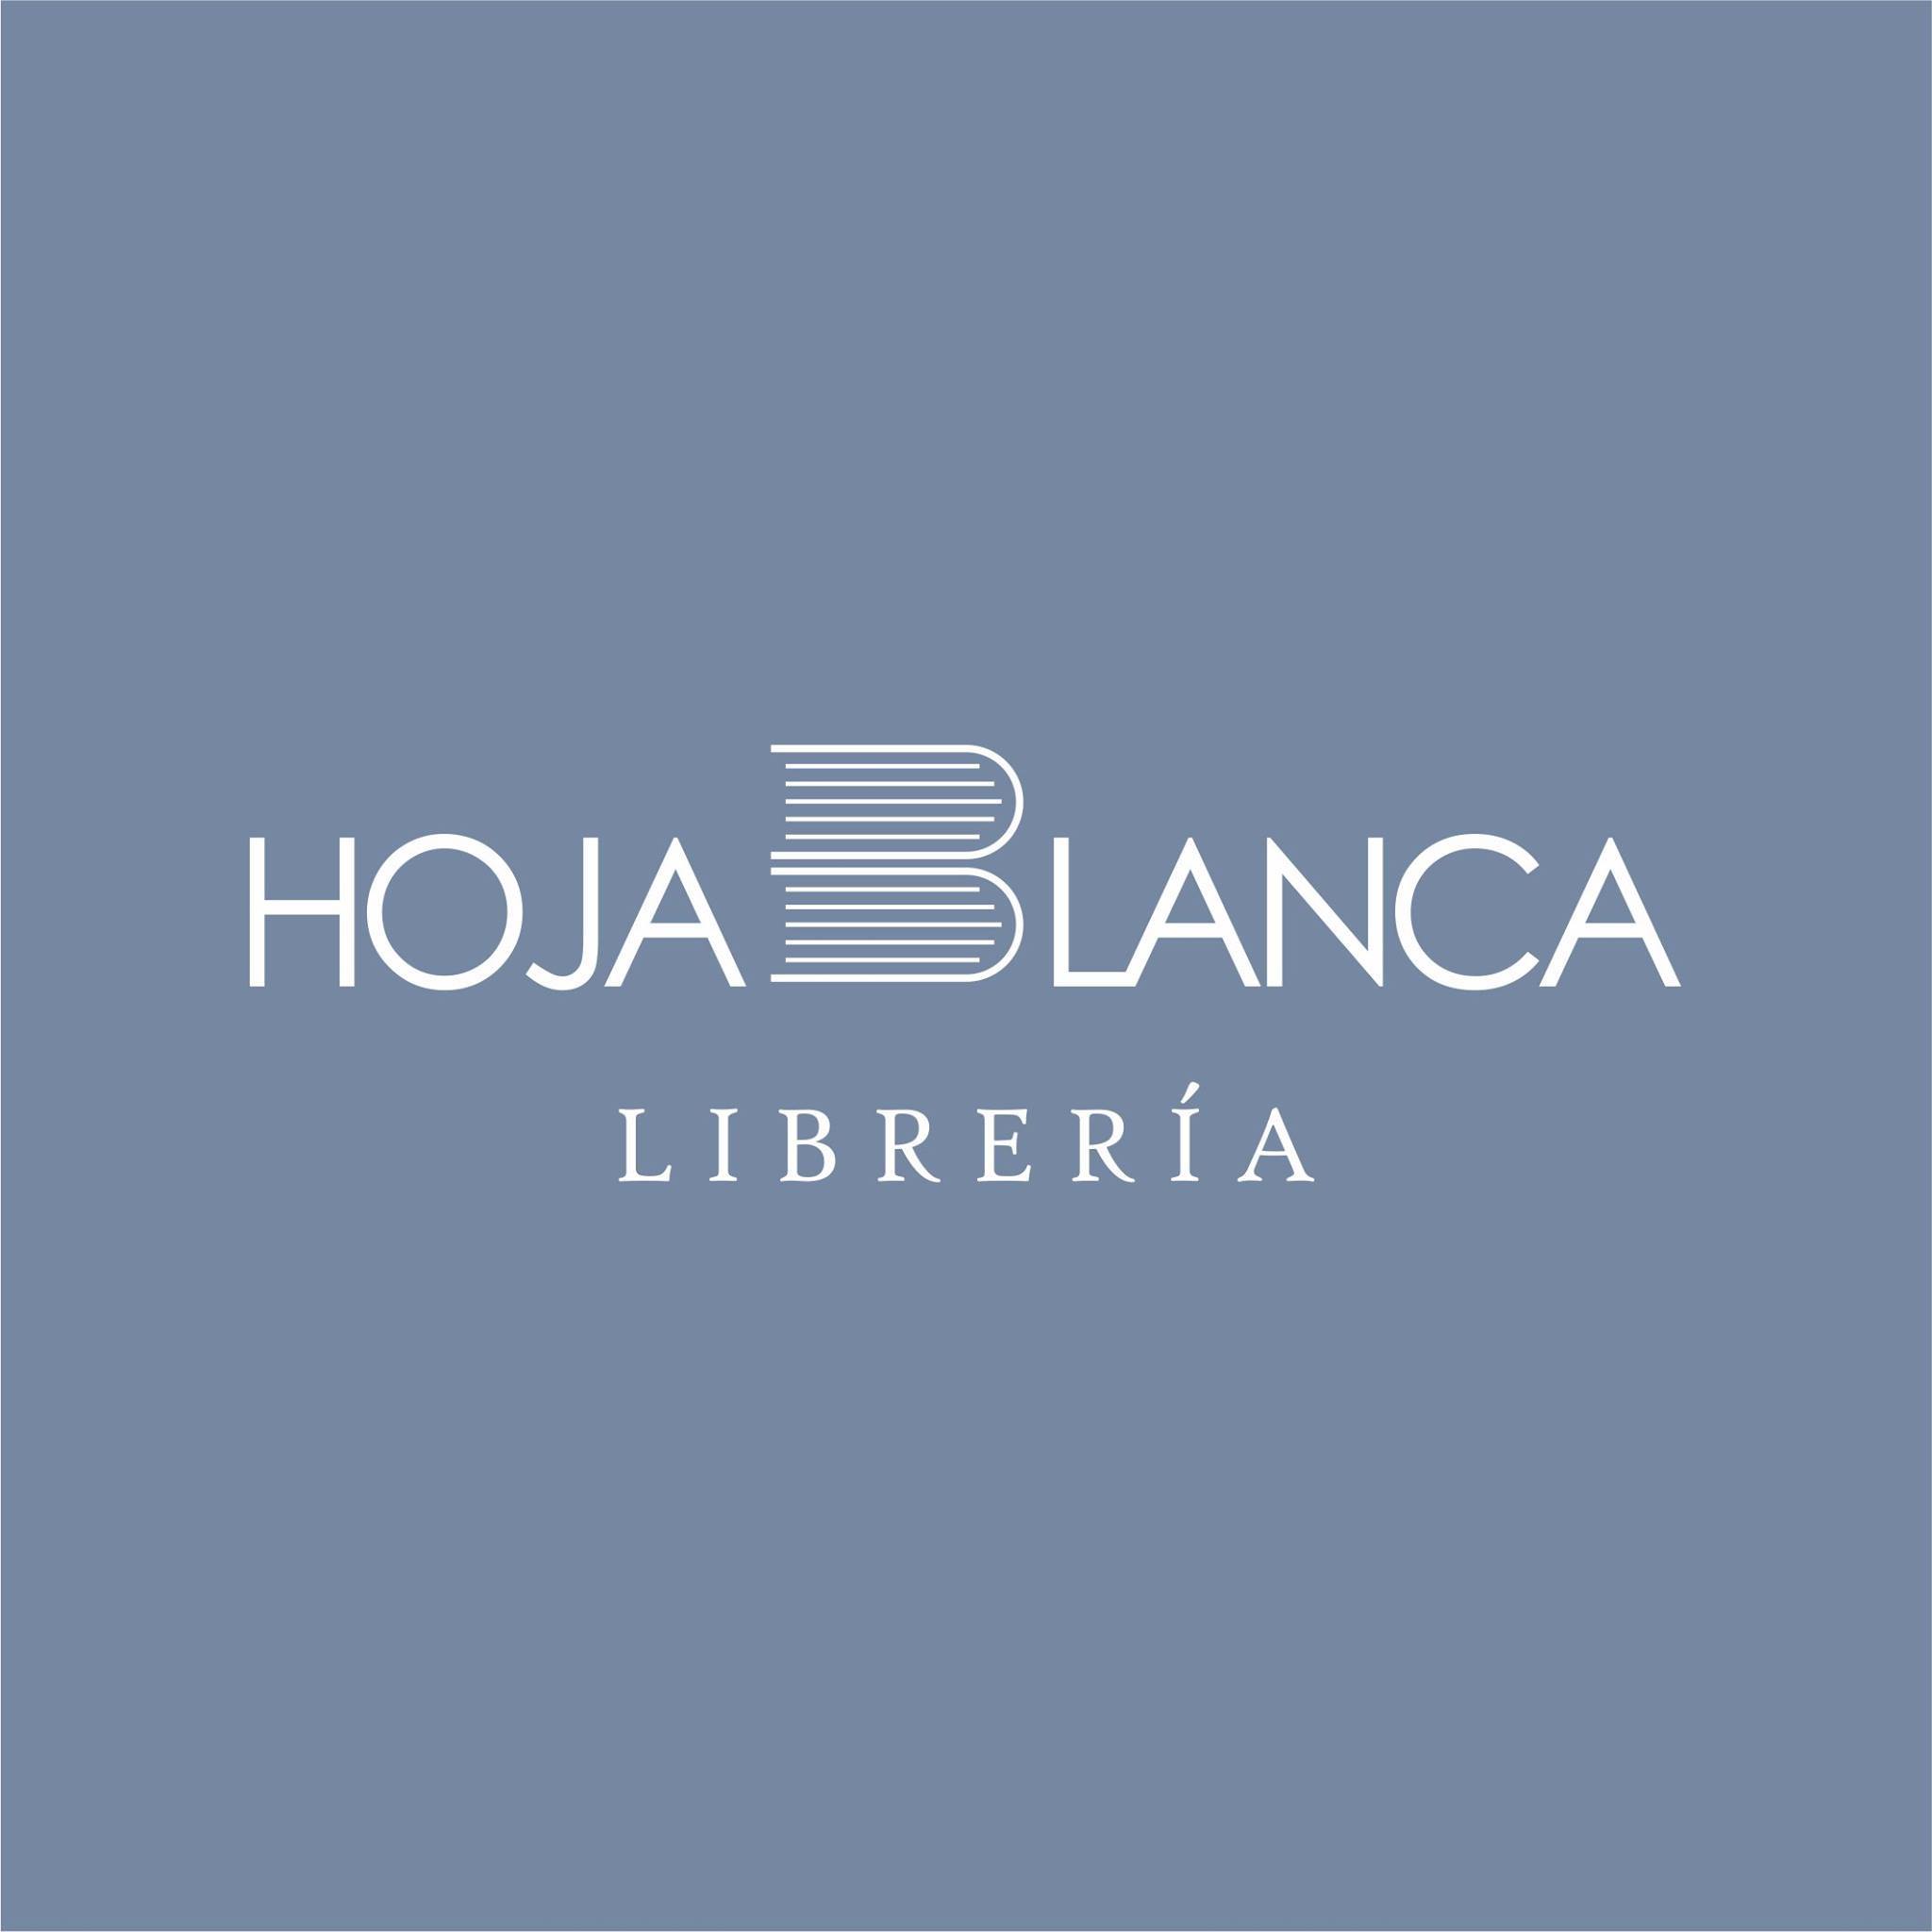 Librería Hojablanca